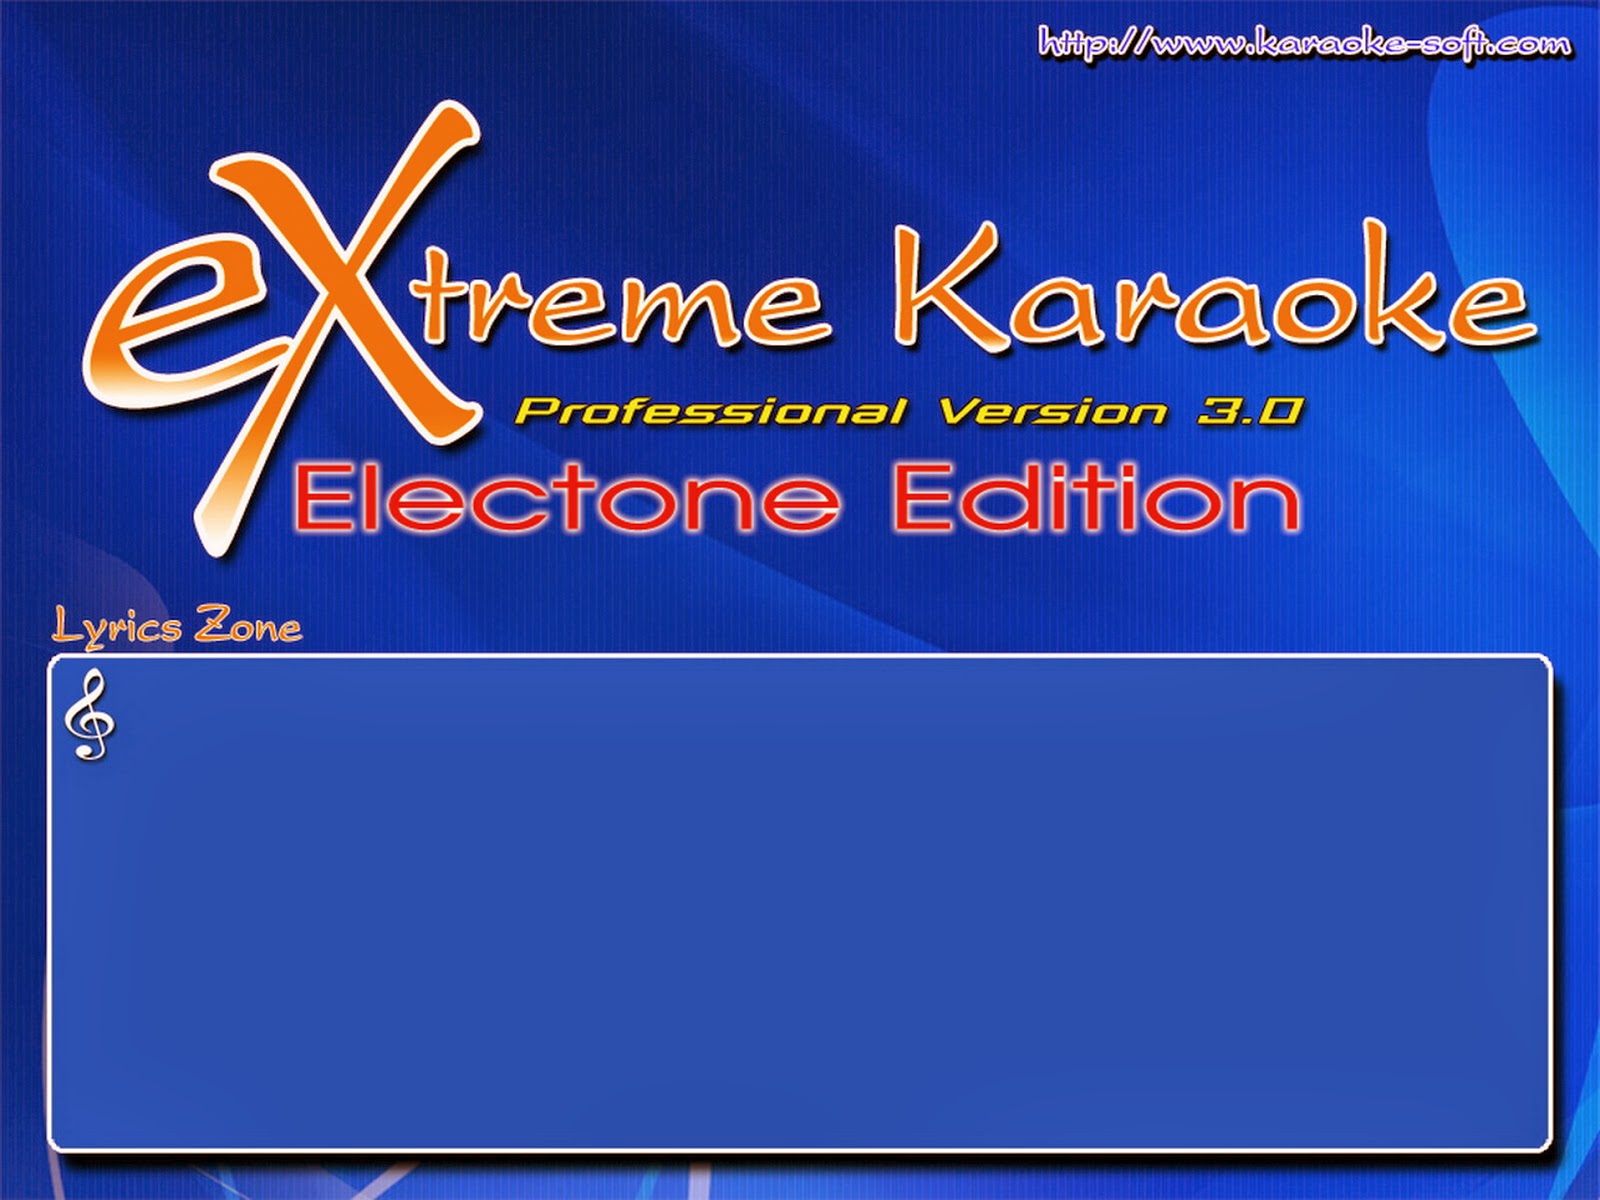 Extreme Karaoke 2017 One2Up โหลดโปรแกรมคาราโอเกะ เดือนกุมภาพันธฺ์ 2560  ล่าสุด